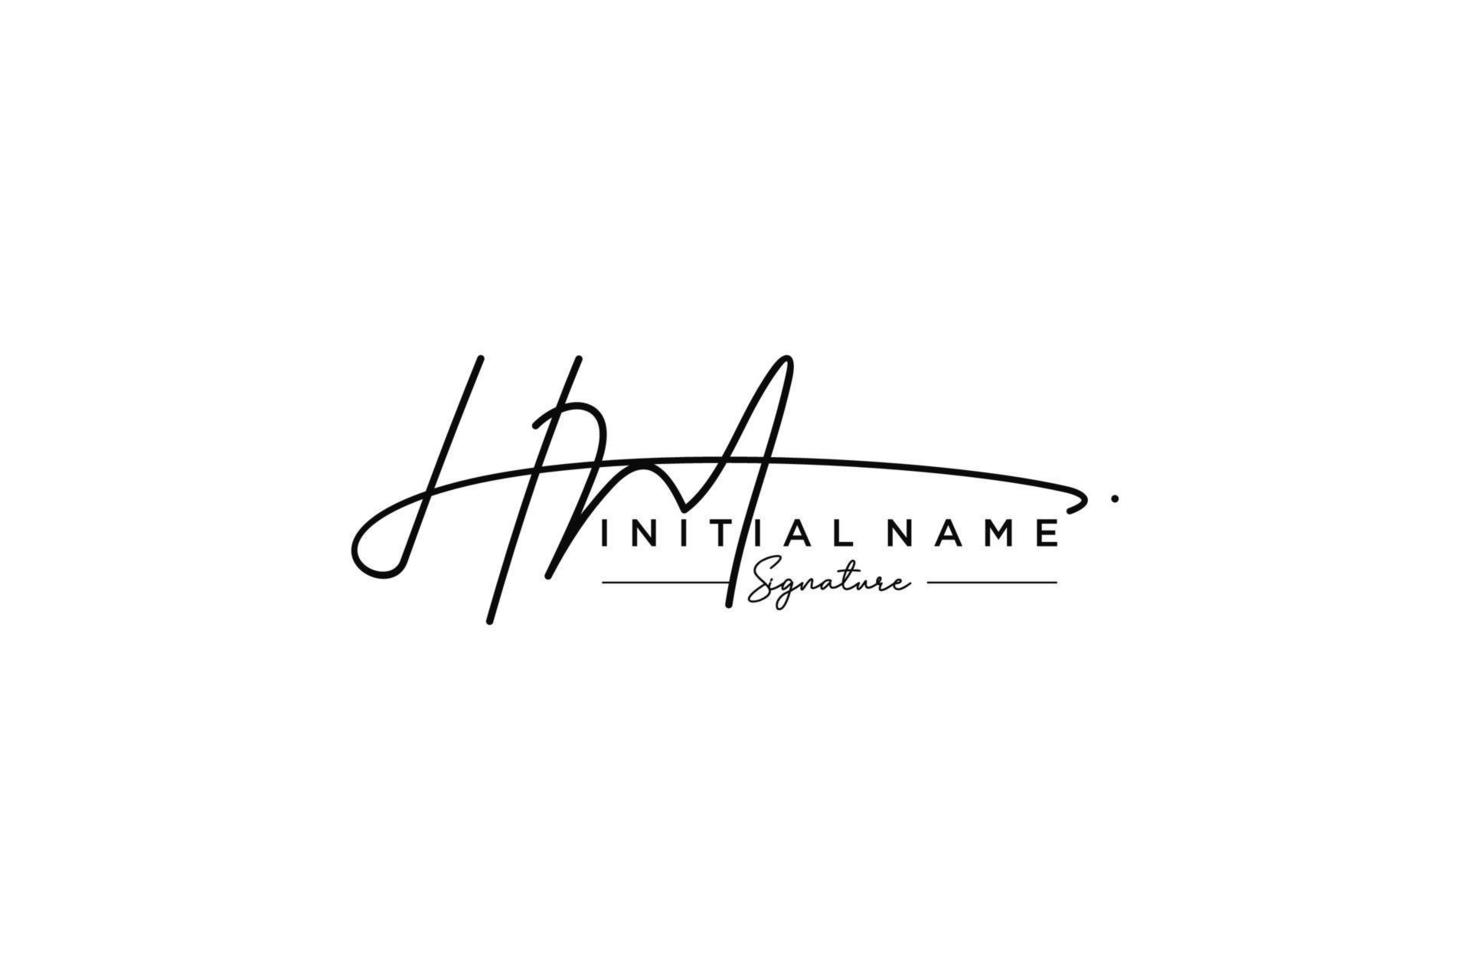 vecteur de modèle de logo de signature hm initial. illustration vectorielle de calligraphie dessinée à la main.